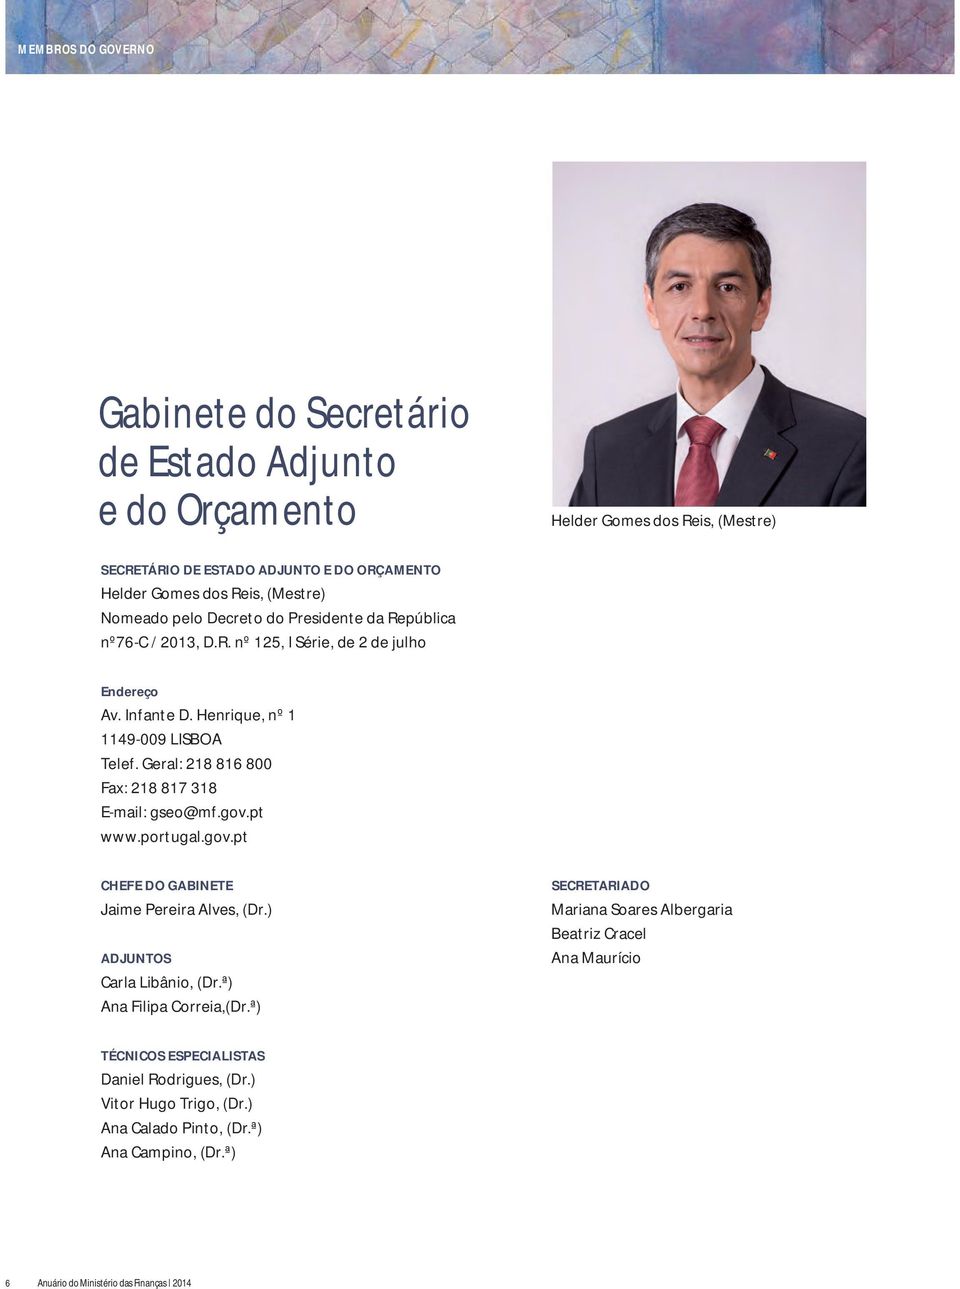 Geral: 218 816 800 Fax: 218 817 318 E-mail: gseo@mf.gov.pt www.portugal.gov.pt CHEFE DO GABINETE Jaime Pereira Alves, (Dr.) ADJUNTOS Carla Libânio, (Dr.ª) Ana Filipa Correia,(Dr.